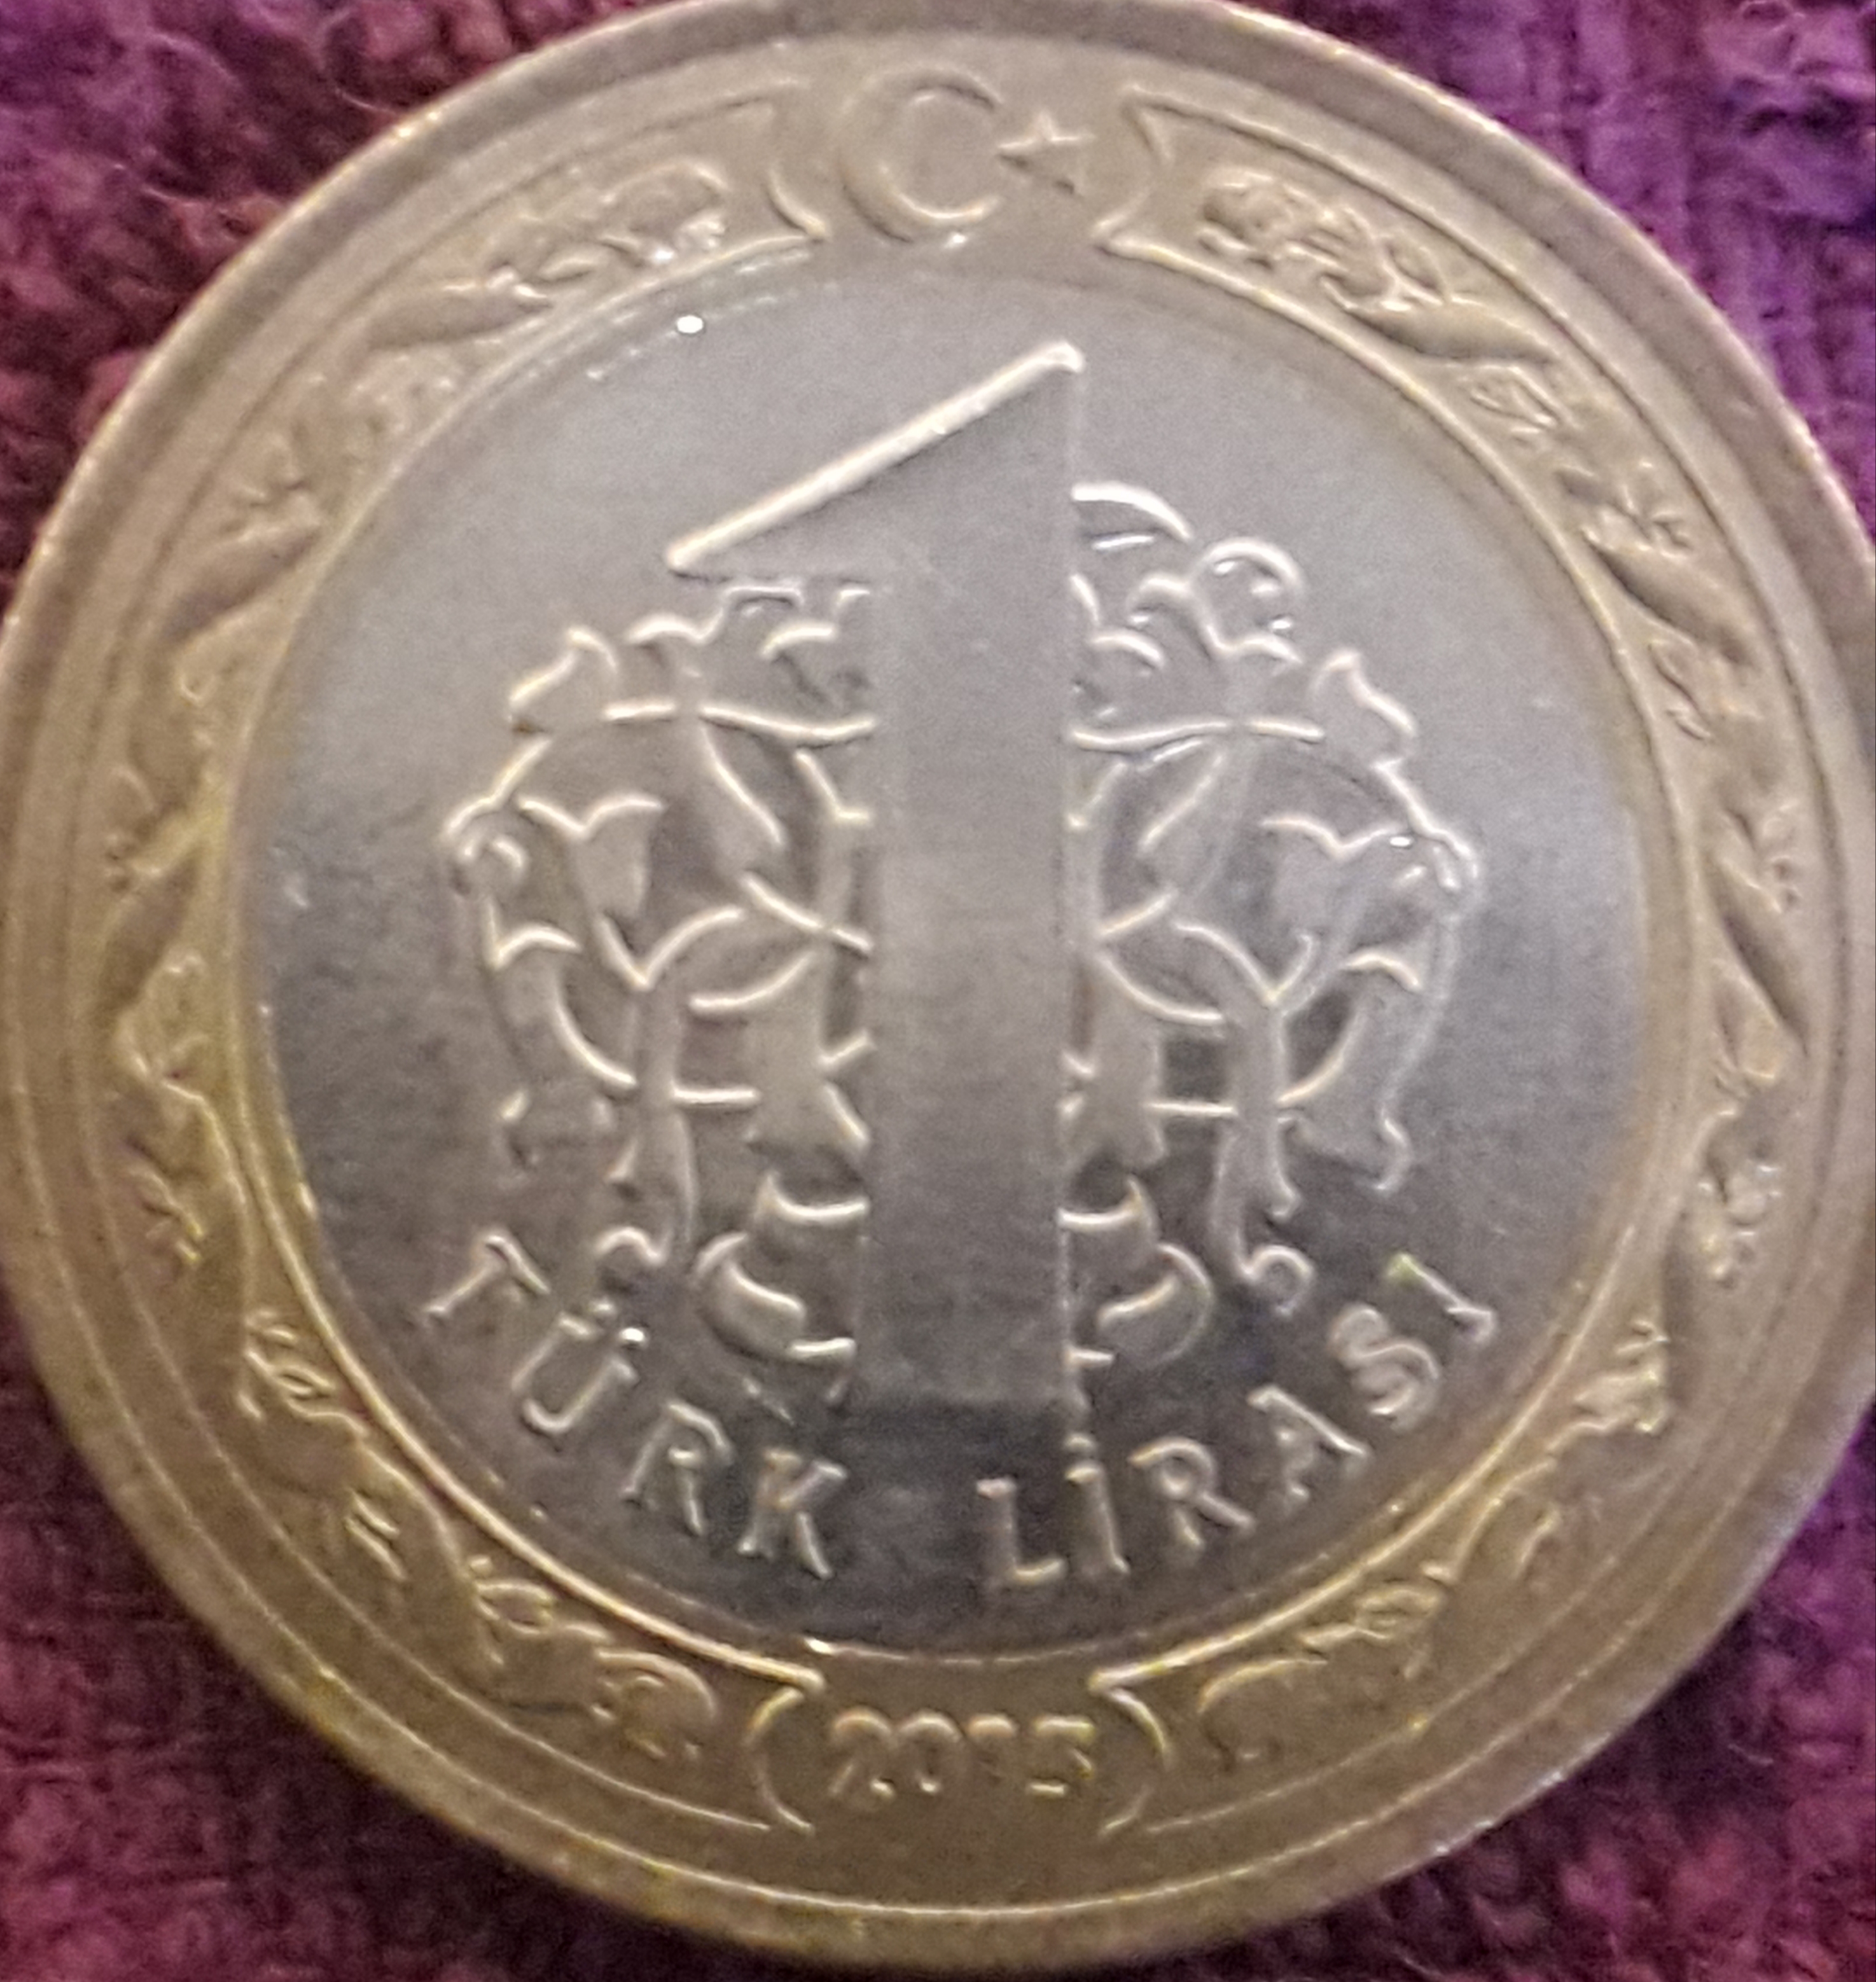 1 Lira (Yüz Kısmında Çift Baskı) 2015 Ön Yüz